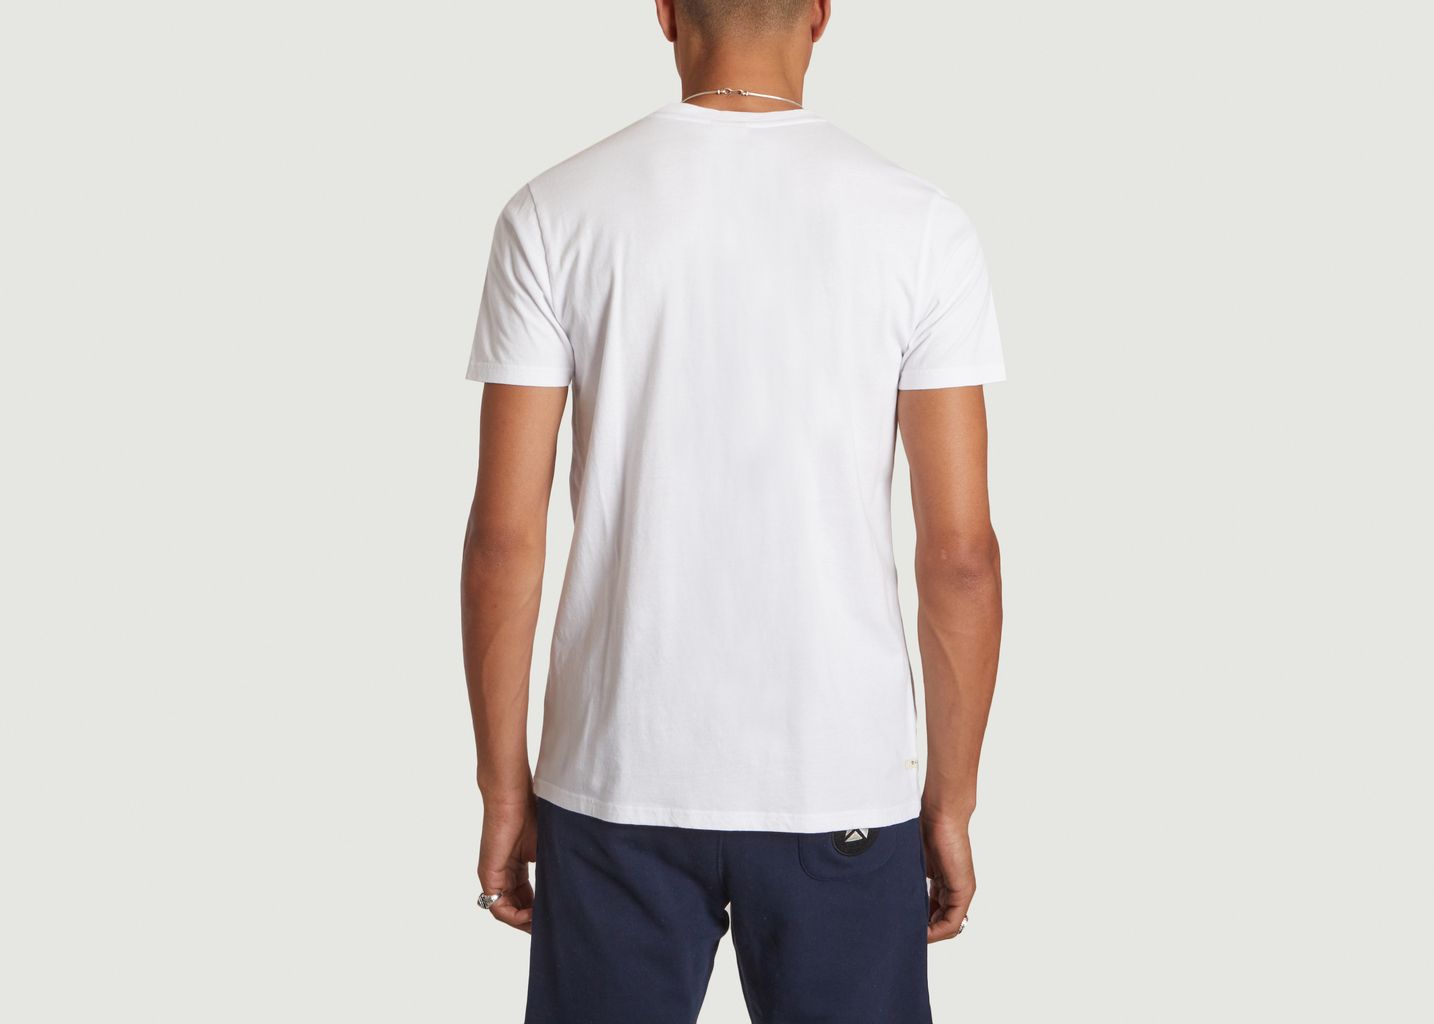 T-shirt Corpo Italic - Kulte